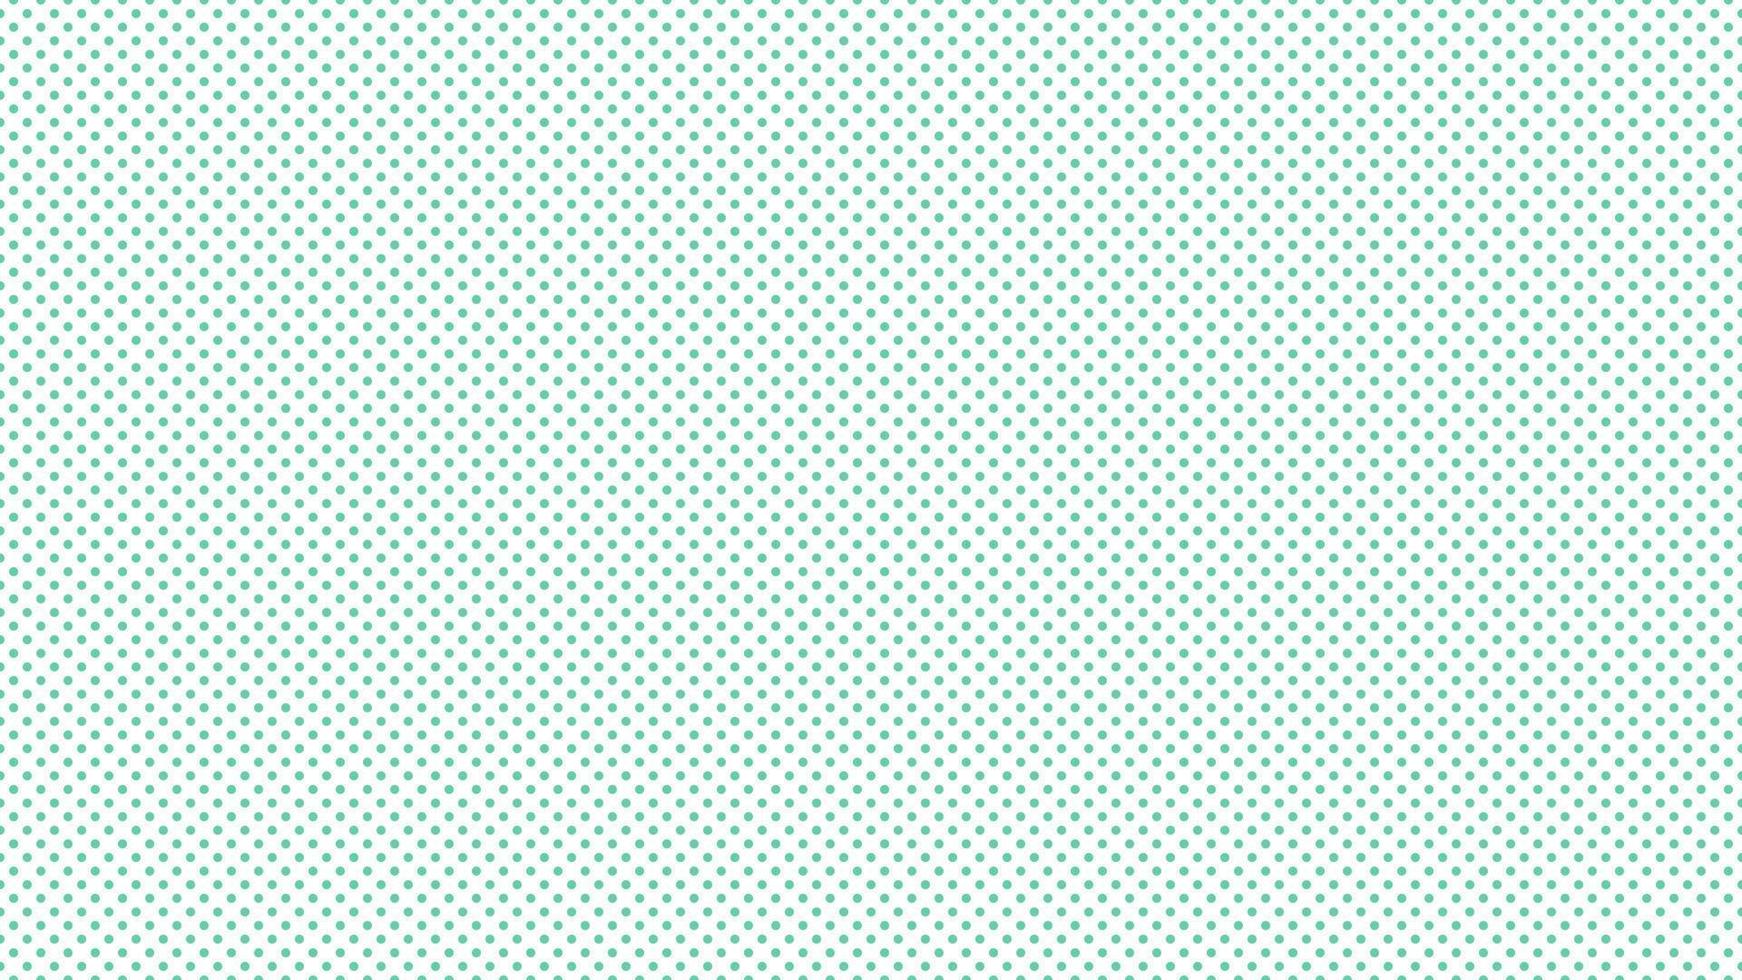 medium aquamarine green color polka dots background vector